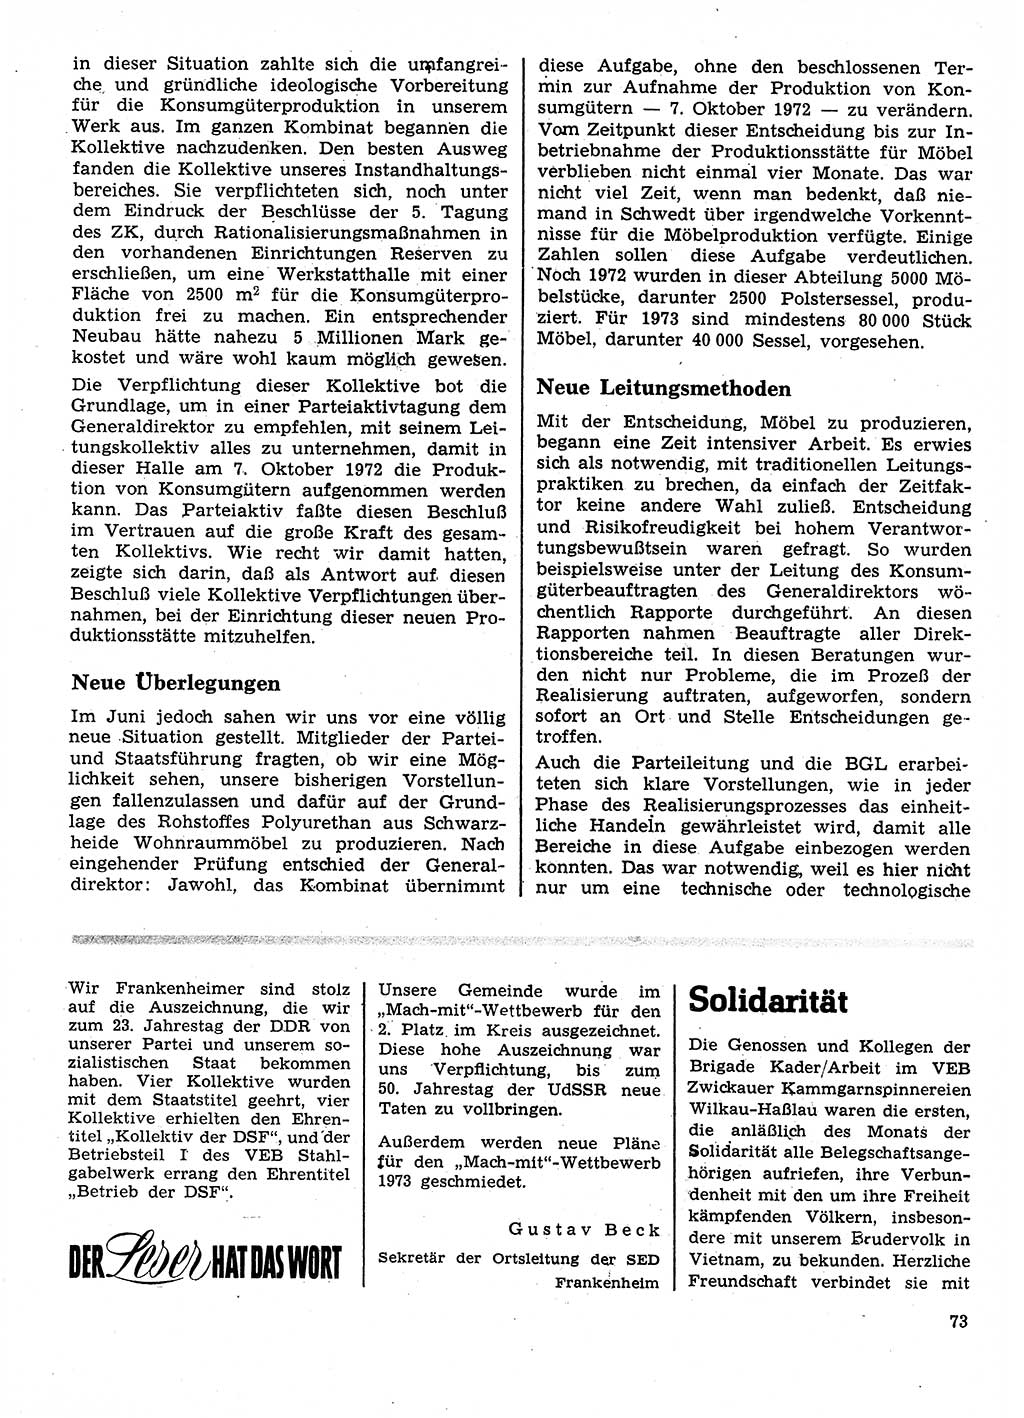 Neuer Weg (NW), Organ des Zentralkomitees (ZK) der SED (Sozialistische Einheitspartei Deutschlands) für Fragen des Parteilebens, 28. Jahrgang [Deutsche Demokratische Republik (DDR)] 1973, Seite 73 (NW ZK SED DDR 1973, S. 73)